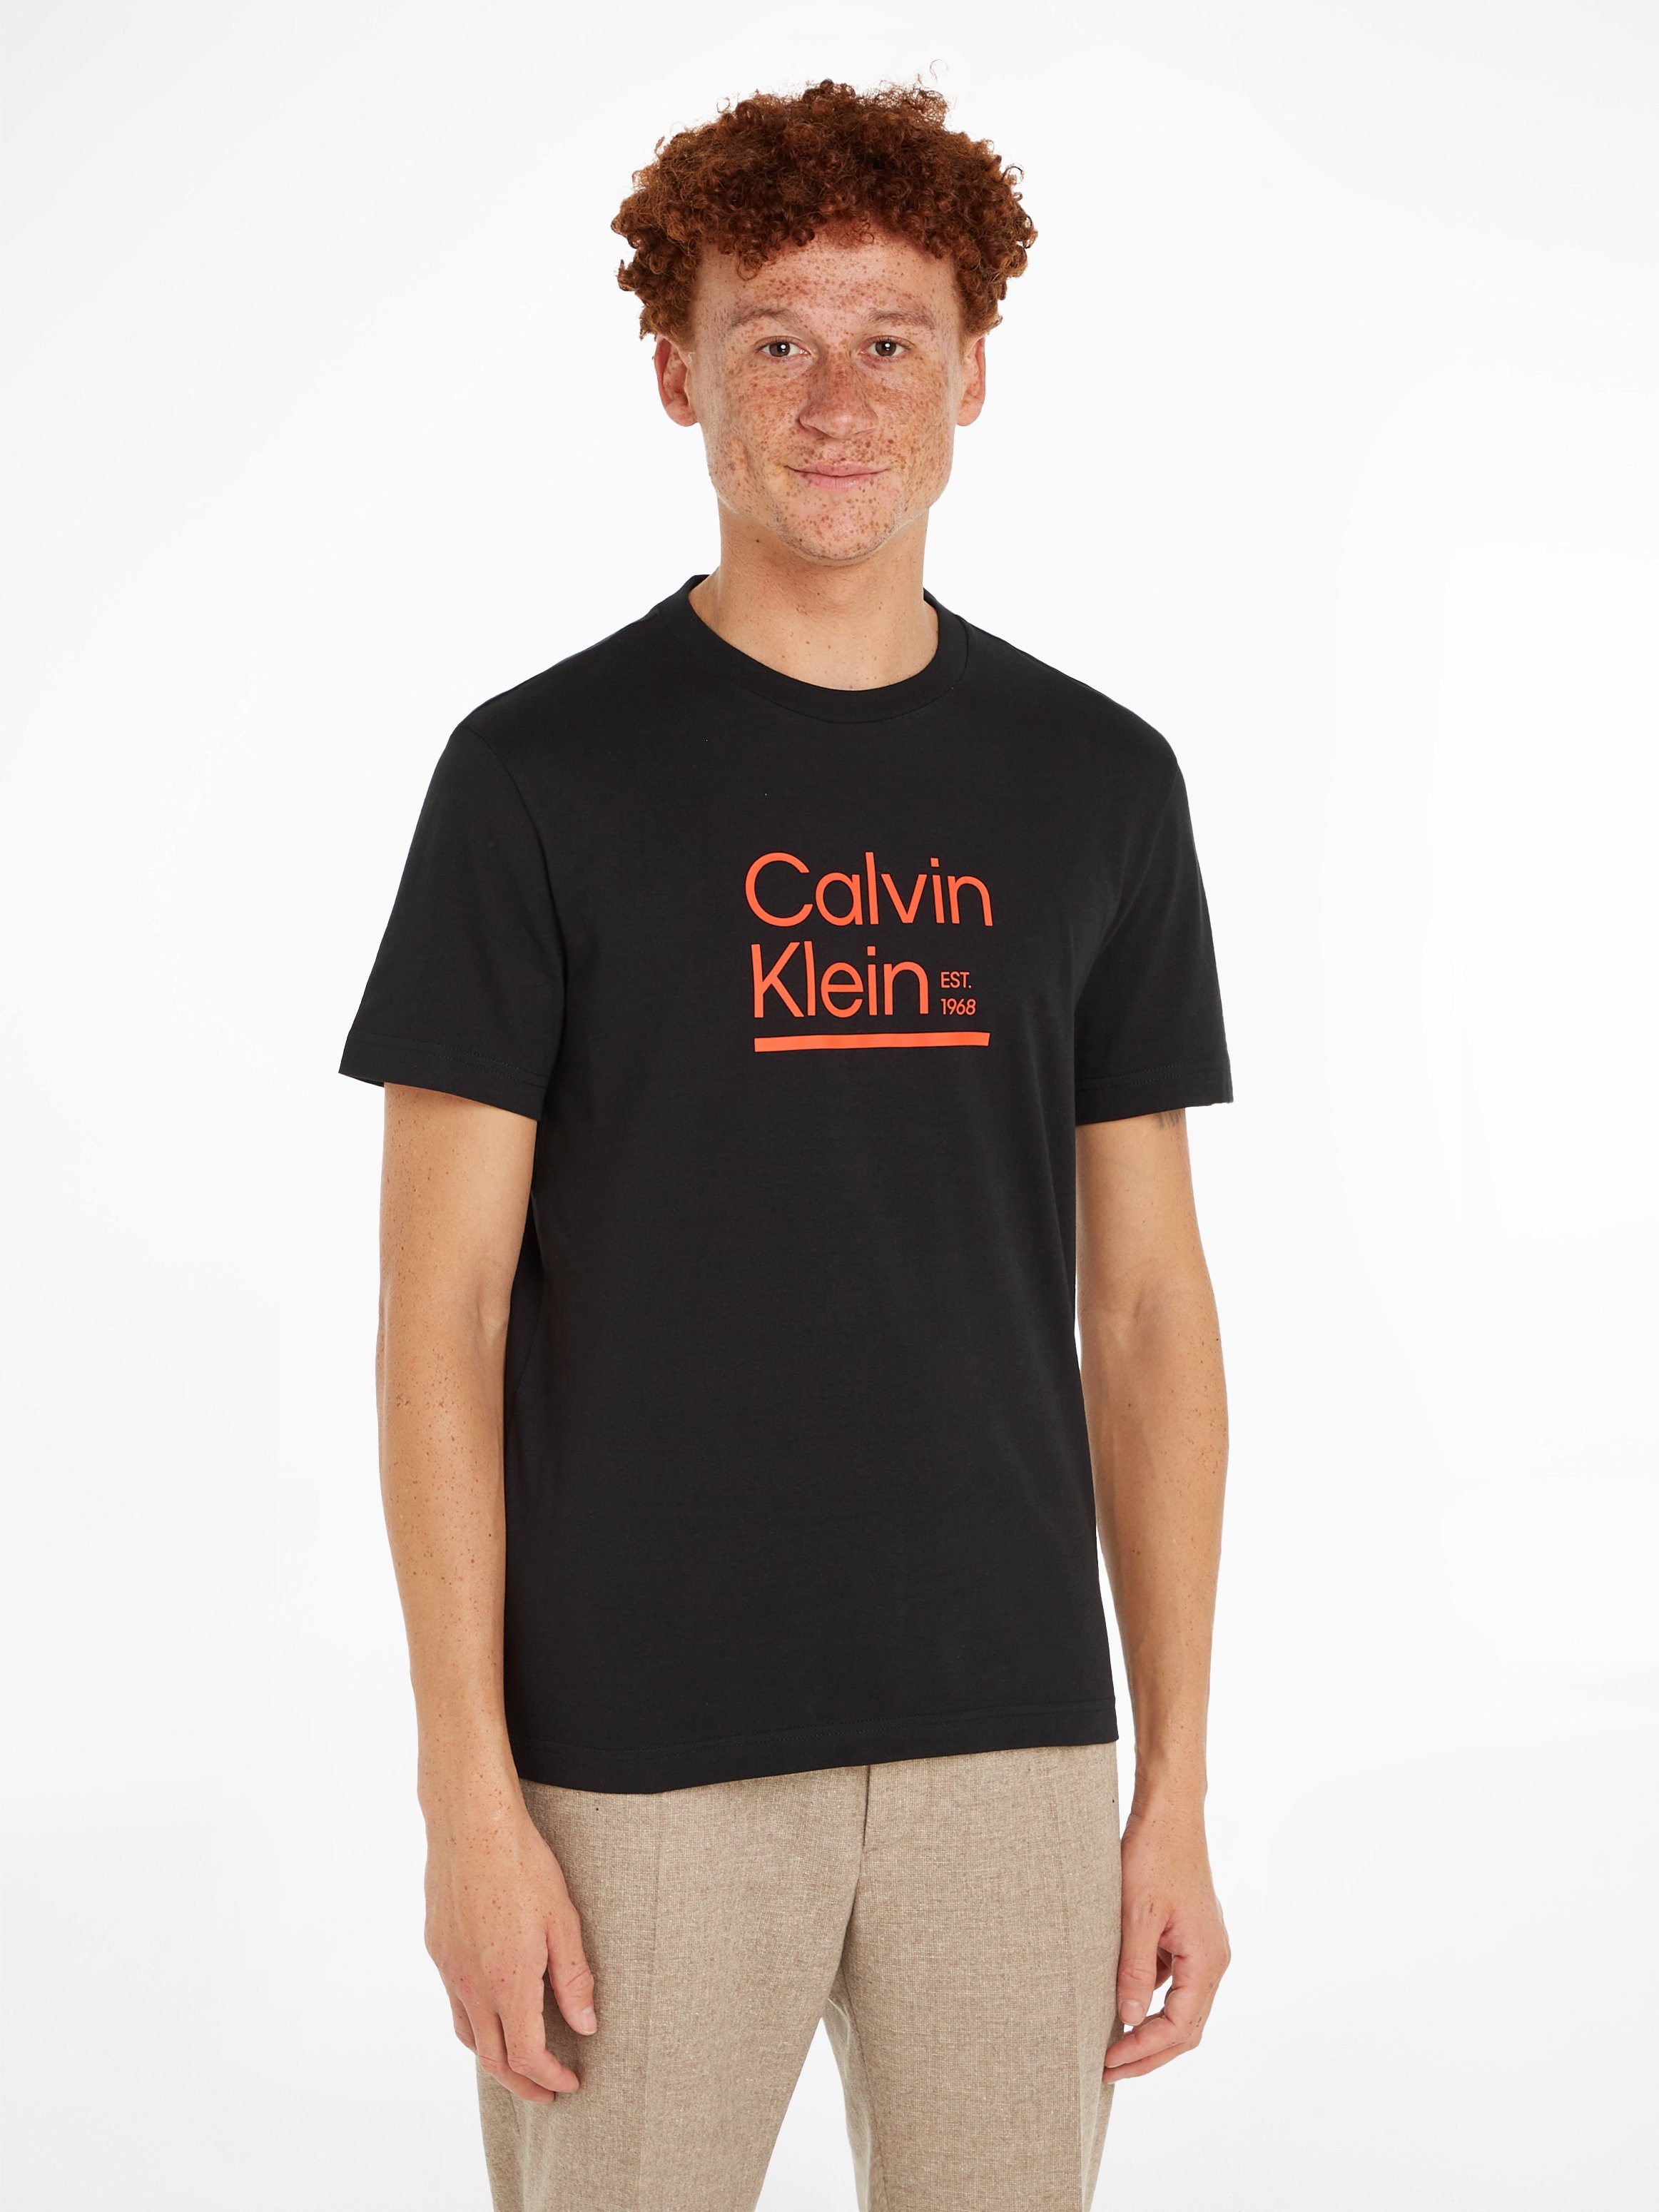 LINE Klein LOGO CK-Logodruck mit T-SHIRT T-Shirt Calvin CONTRAST